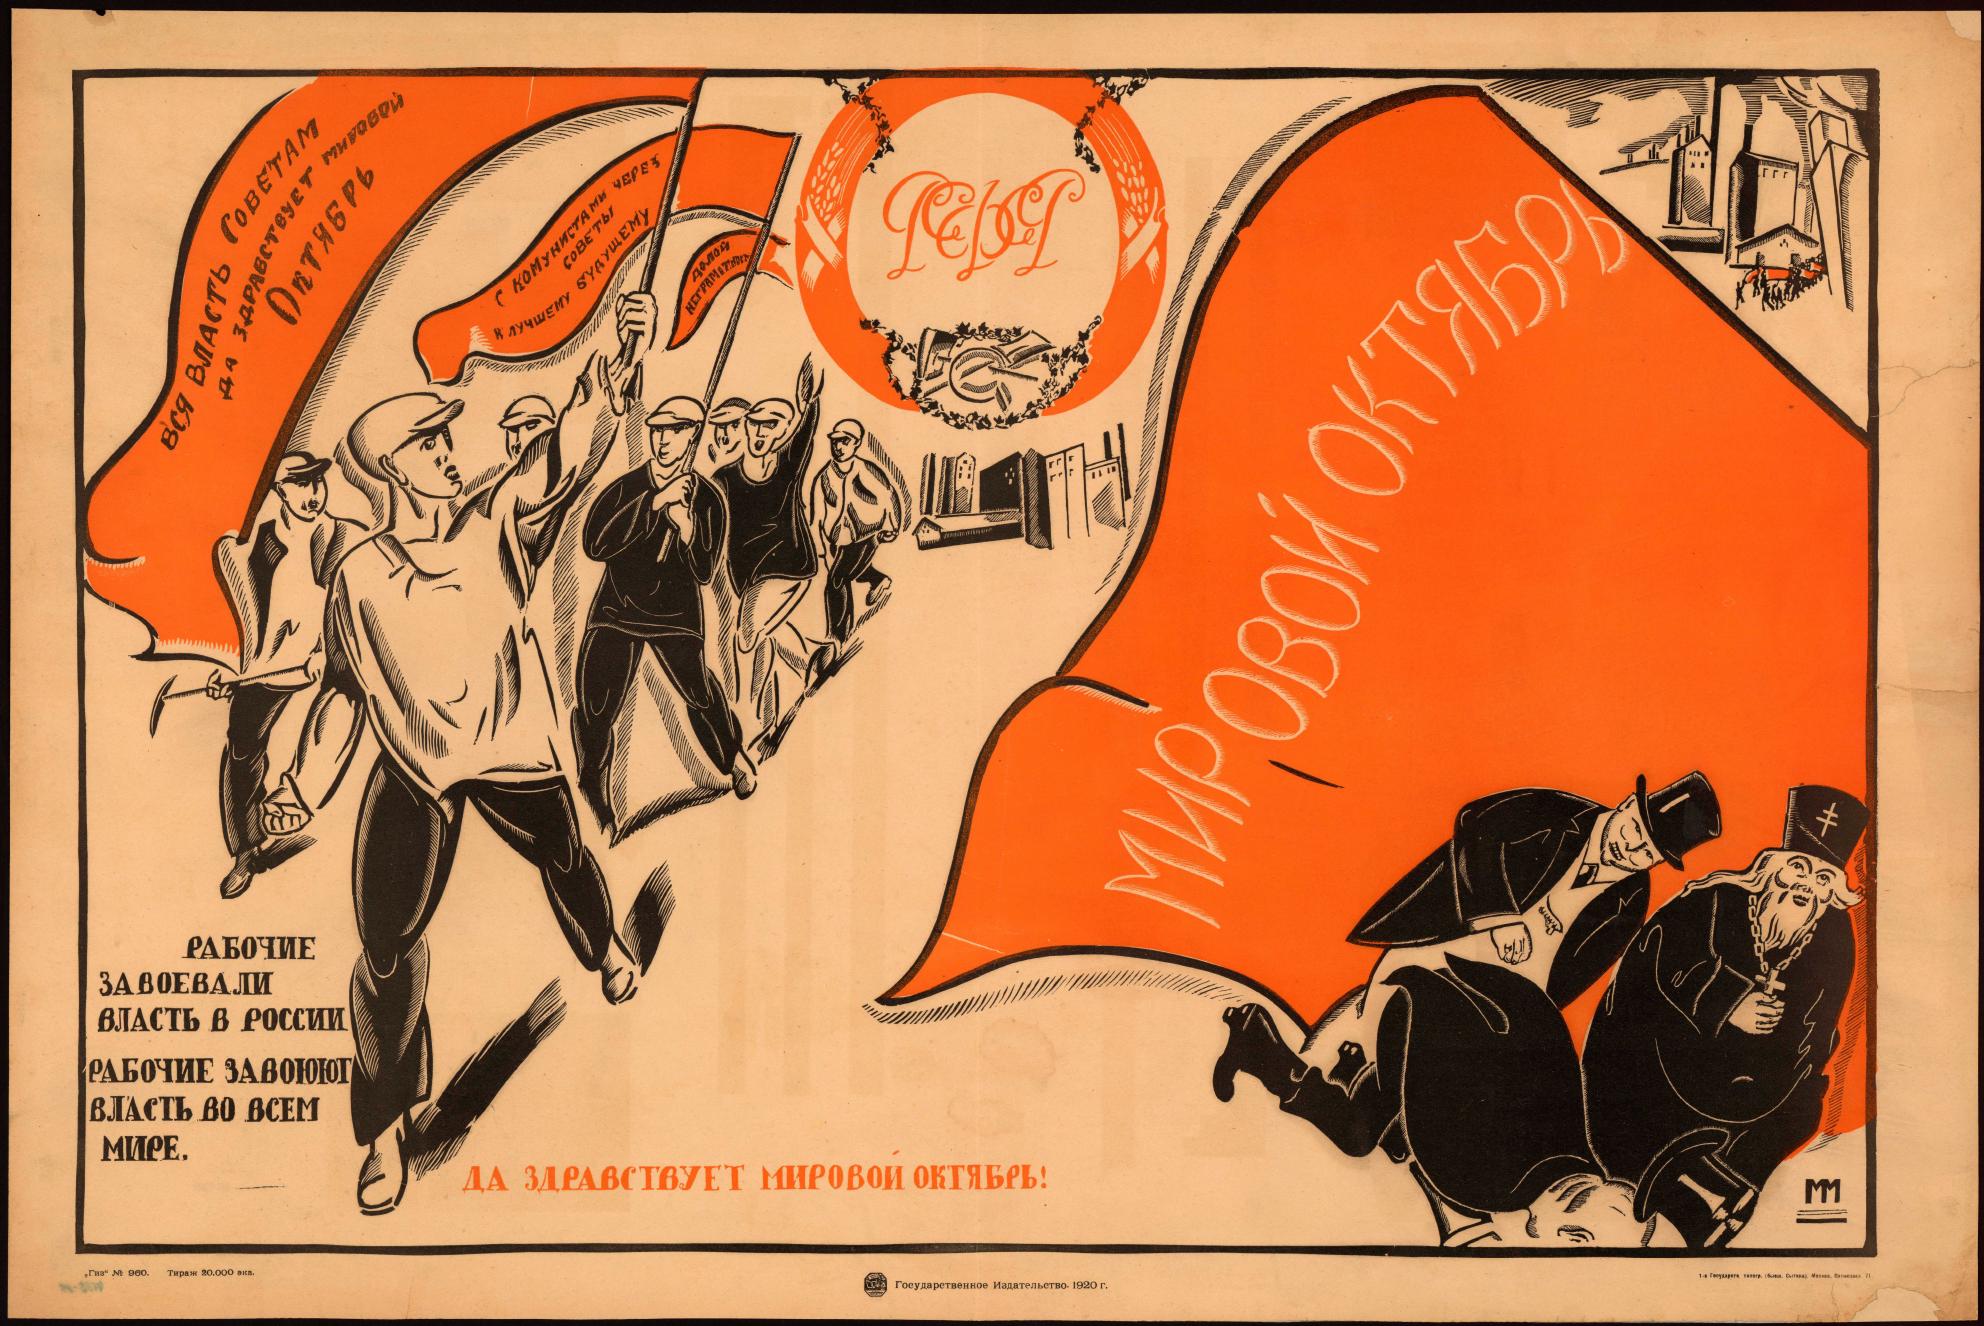 Мировая революция рабочих. Революционные плакаты 1917 года. Плакаты революции 1917 года и гражданской войны. Октябрьская революция 1917 года плакаты. Советские революционные плакаты.